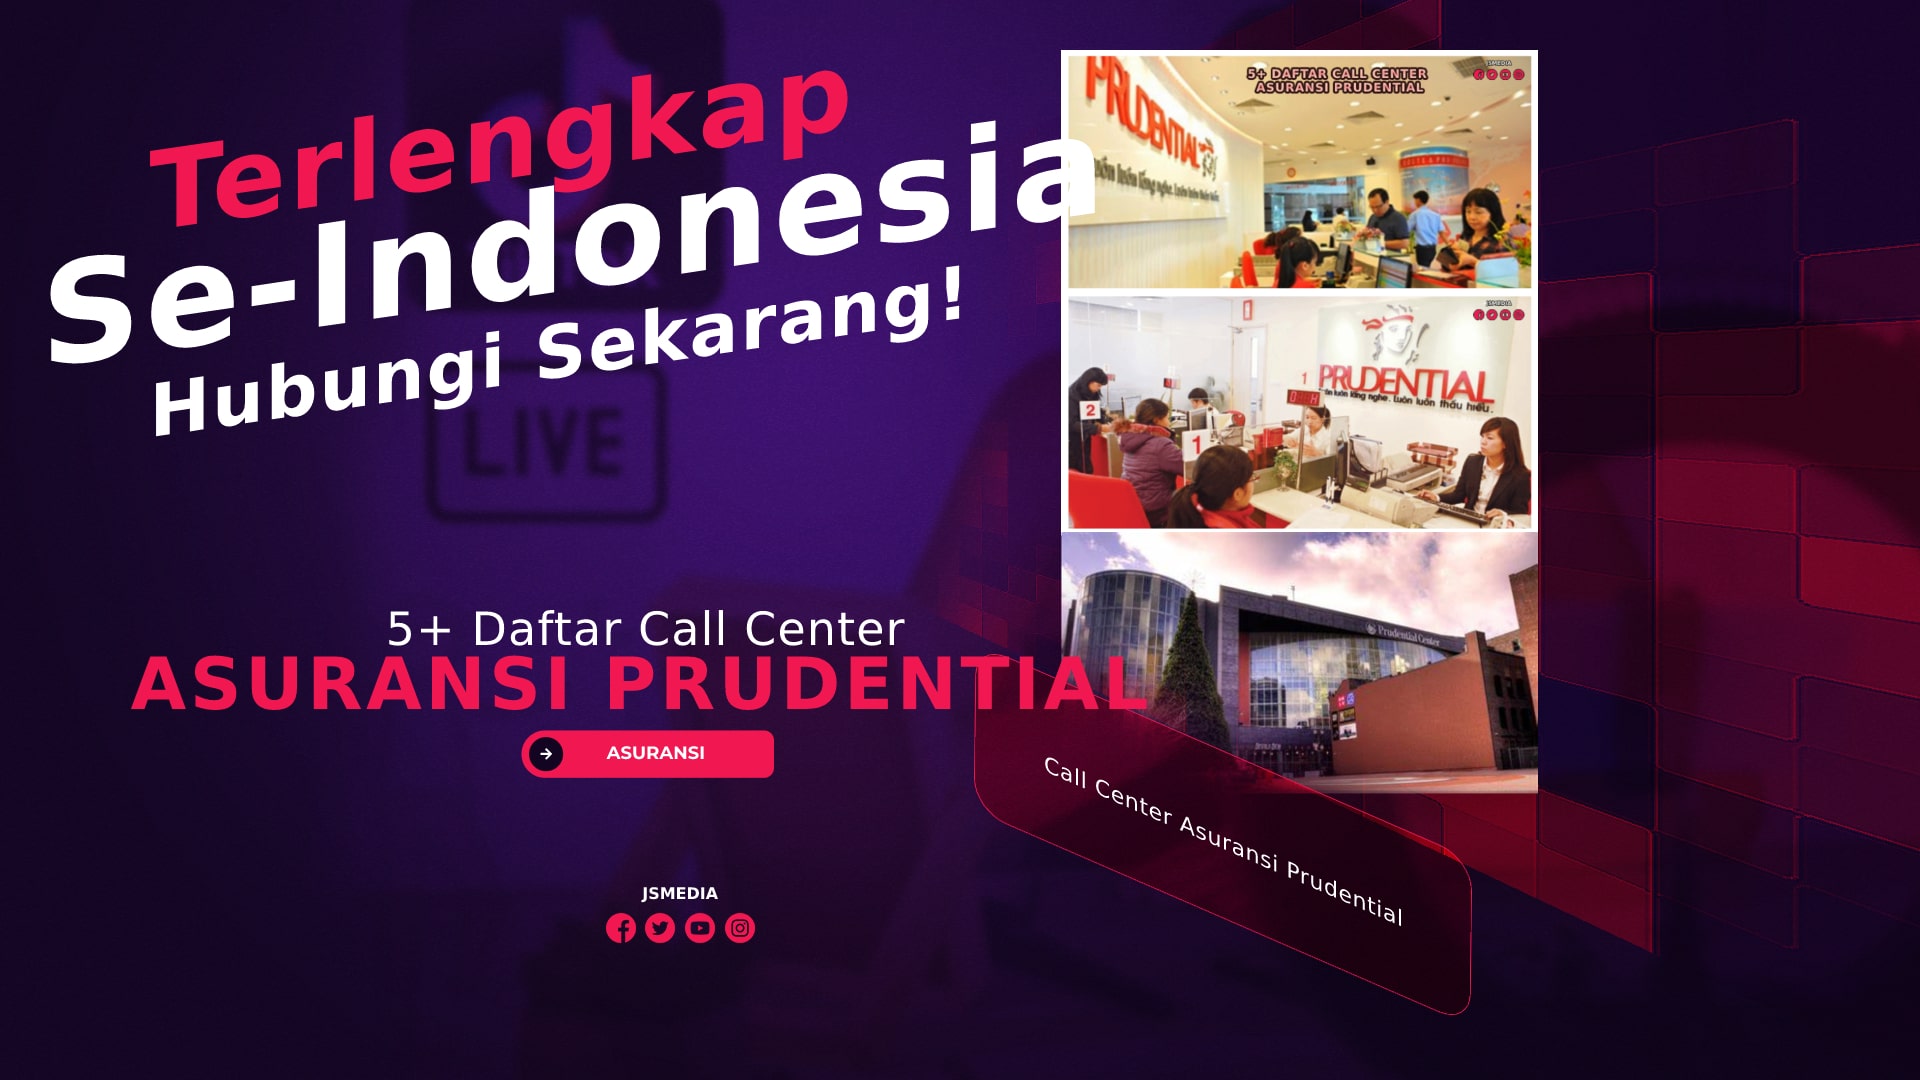 5+ Daftar Call Center Asuransi Prudential! Terlengkap Se-Indonesia